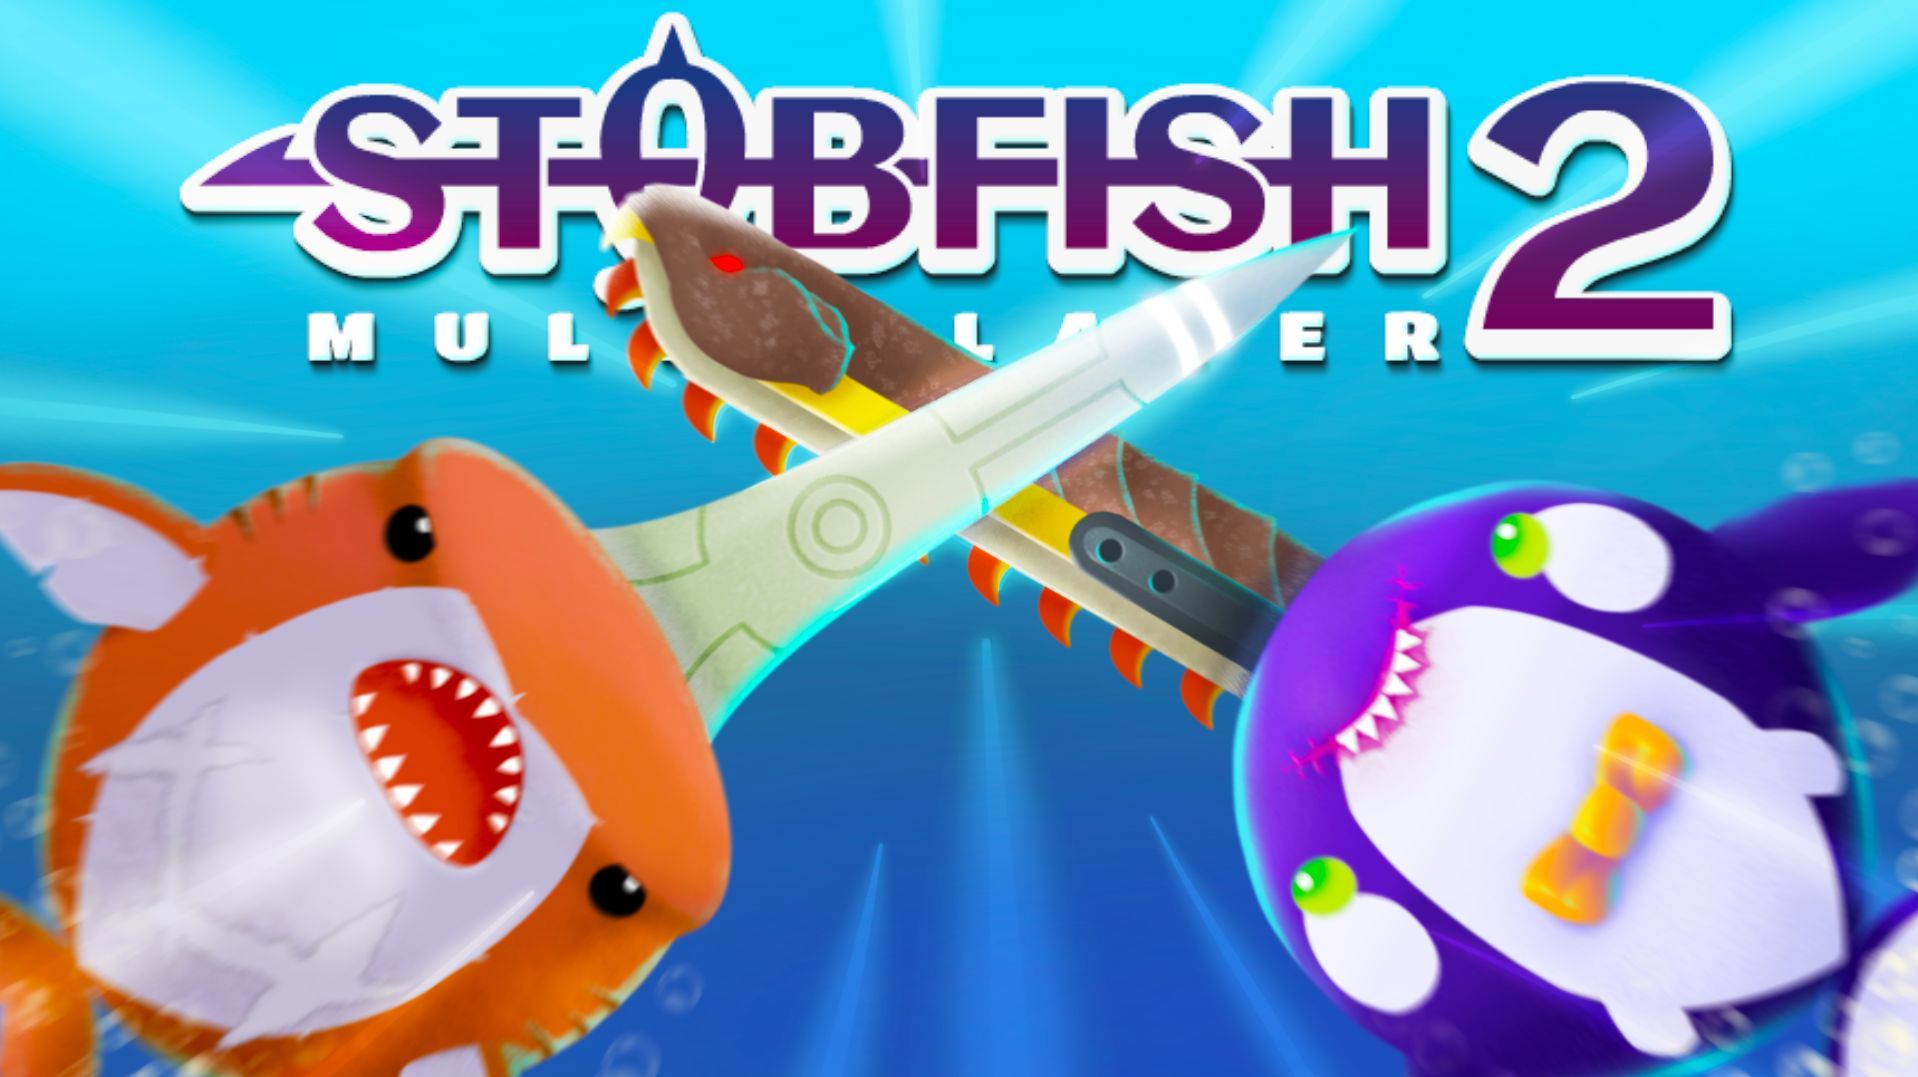 Stabfish 2 game art